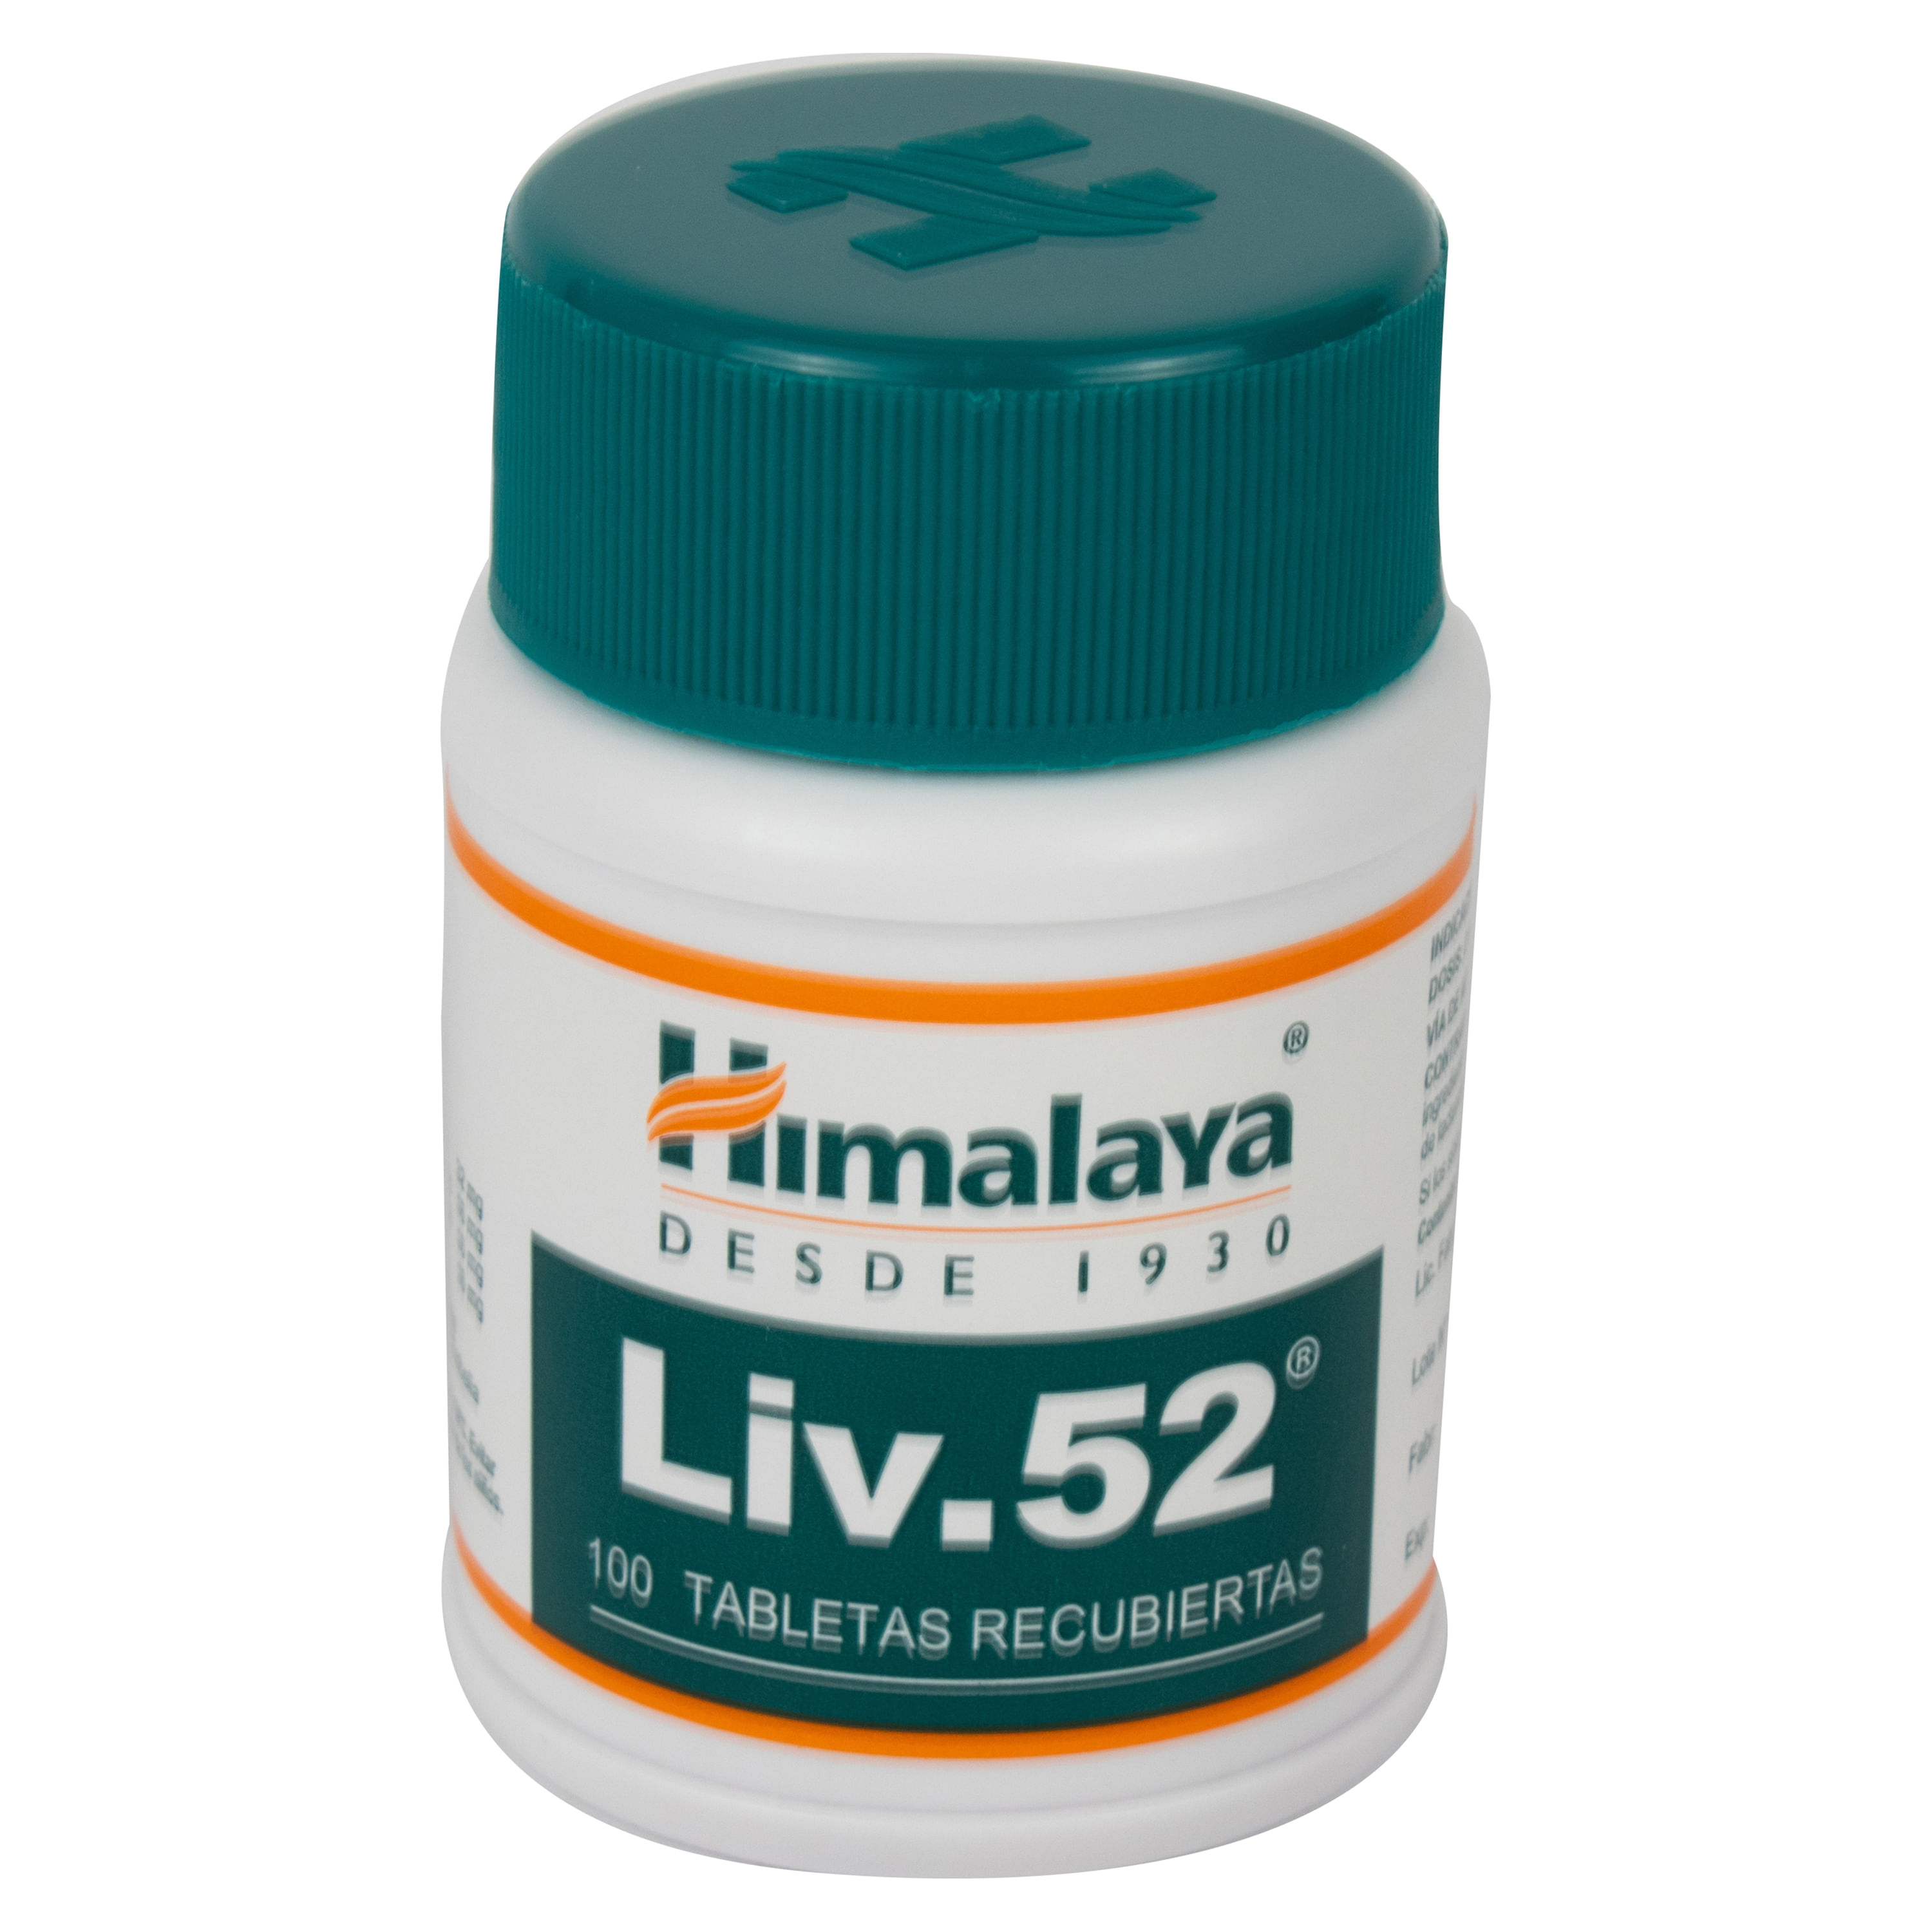 Liv.52 es el experto en el cuidado del hígado